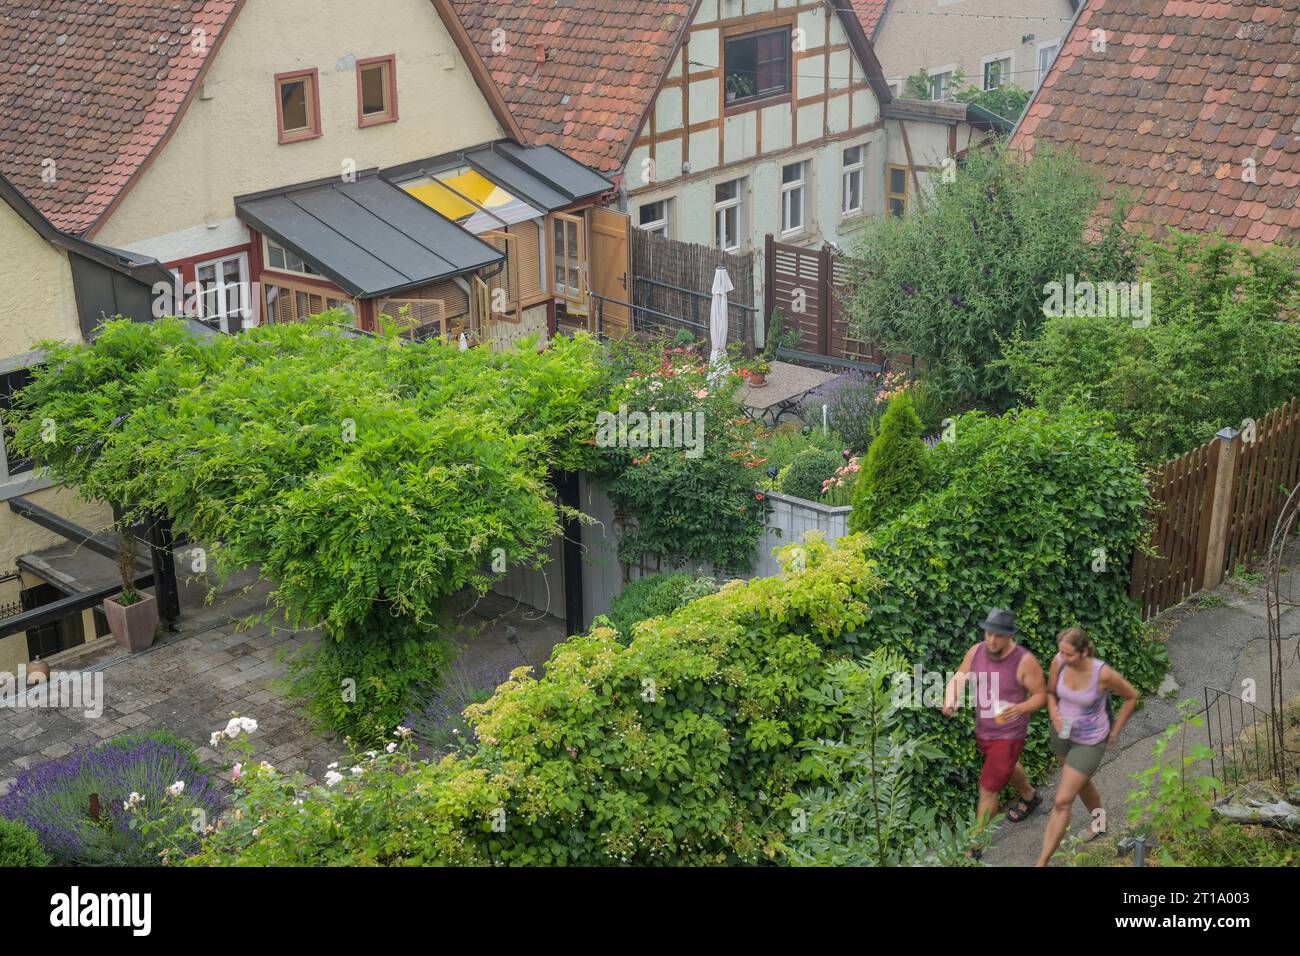 Gärten, Hinterhöfe, Burggasse, Altstadt, Rothenburg ob der Tauber, Bayern, Allemagne Banque D'Images